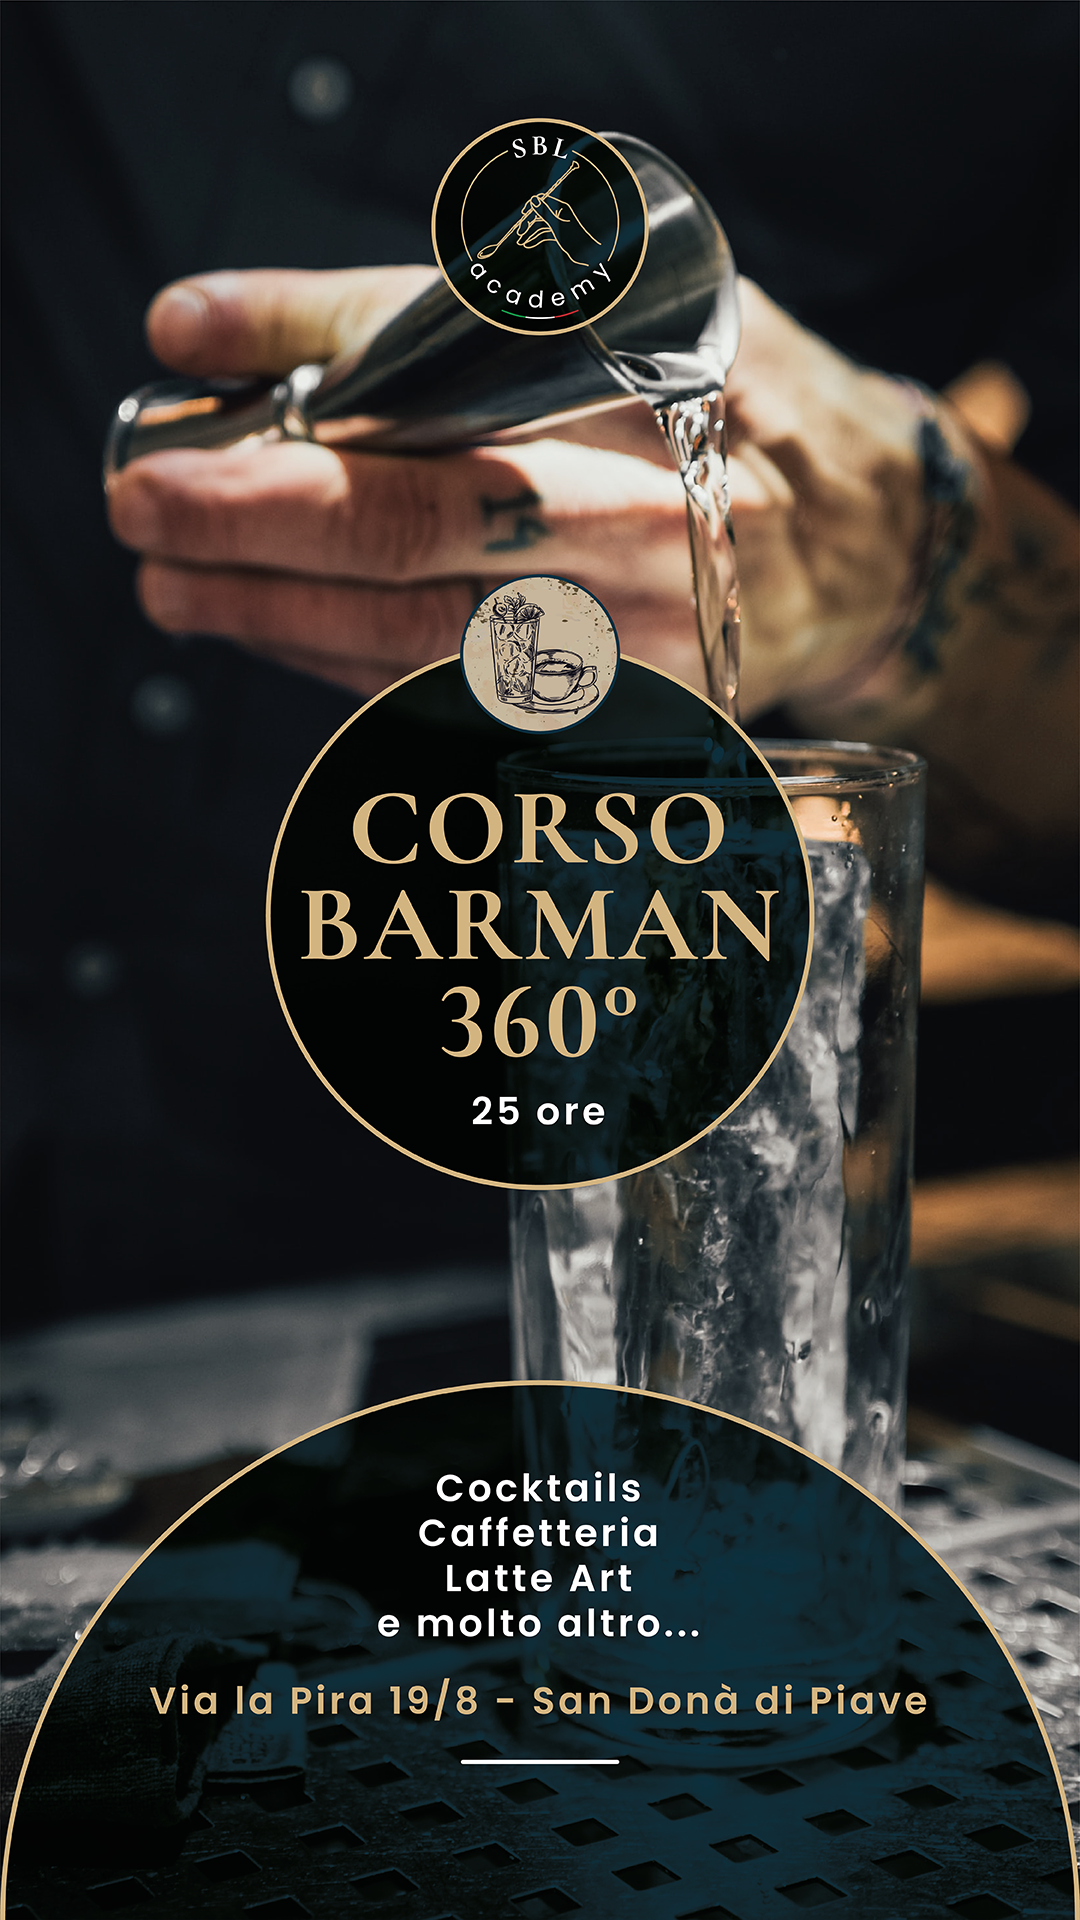 SBL ACADEMY_CORSO BARMAN 360-02 A